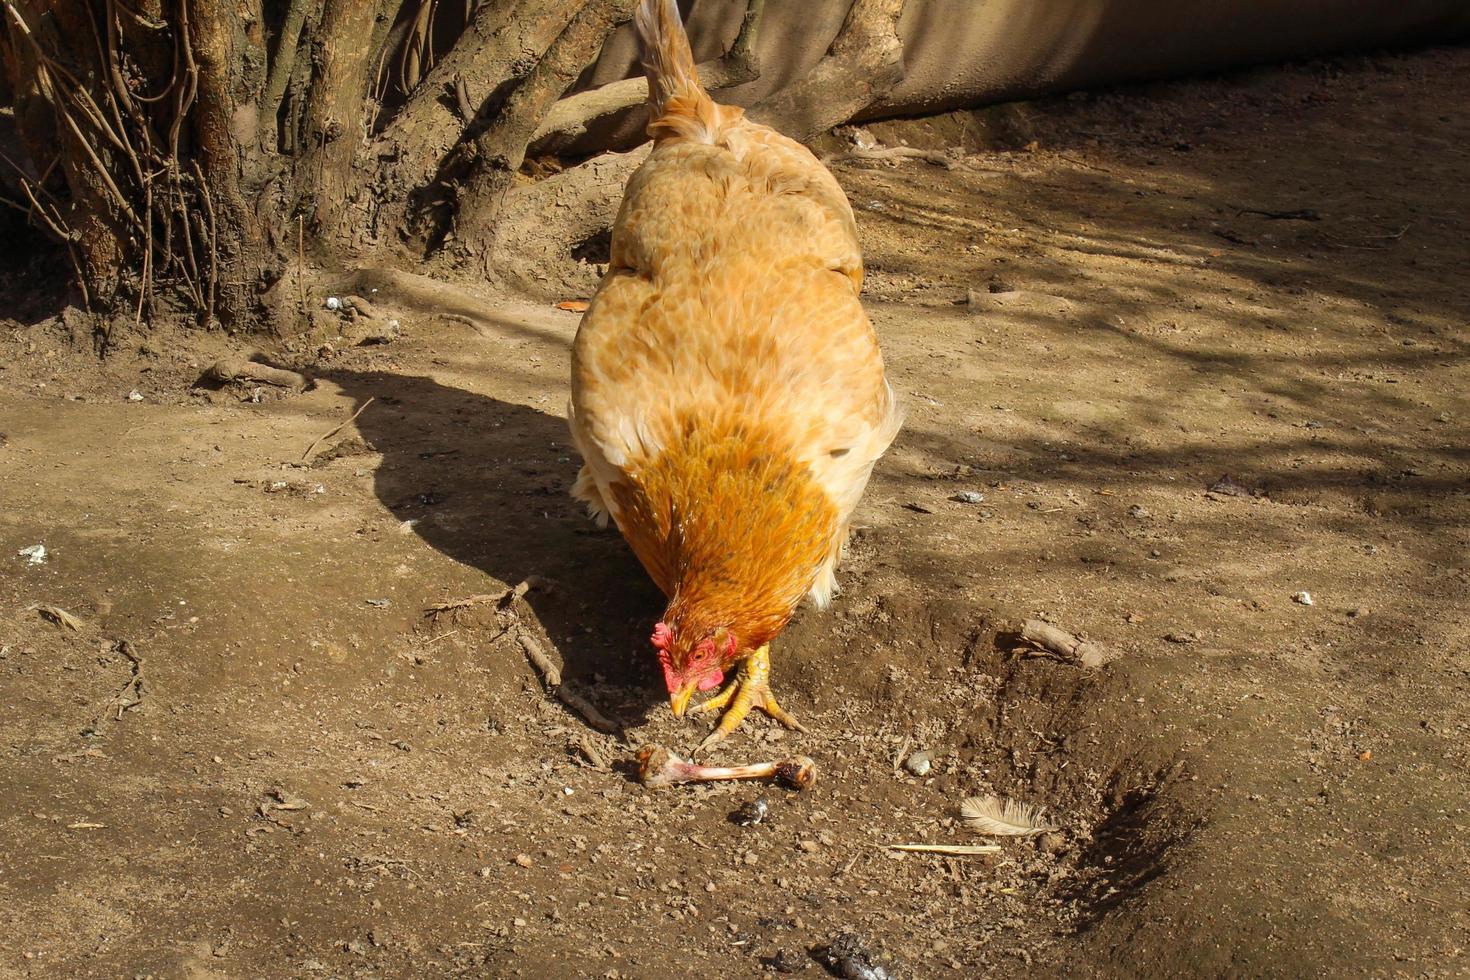 frigående kyckling på gården. kyckling såg kycklingbenet och vill äta det. foto